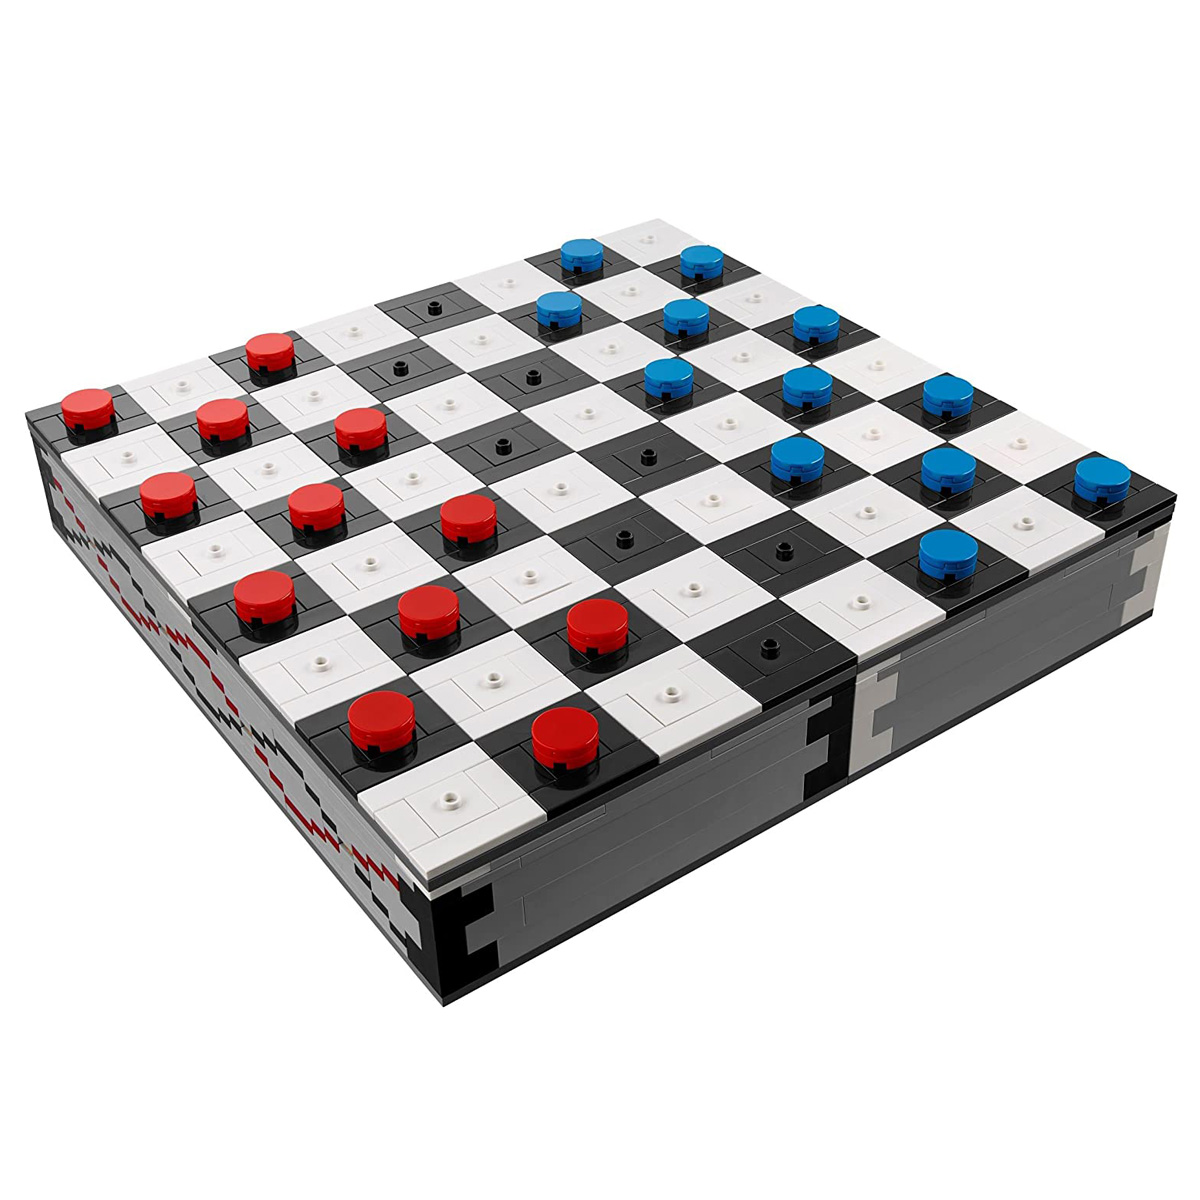 لگو سری Creator مدل Chess کد 40174